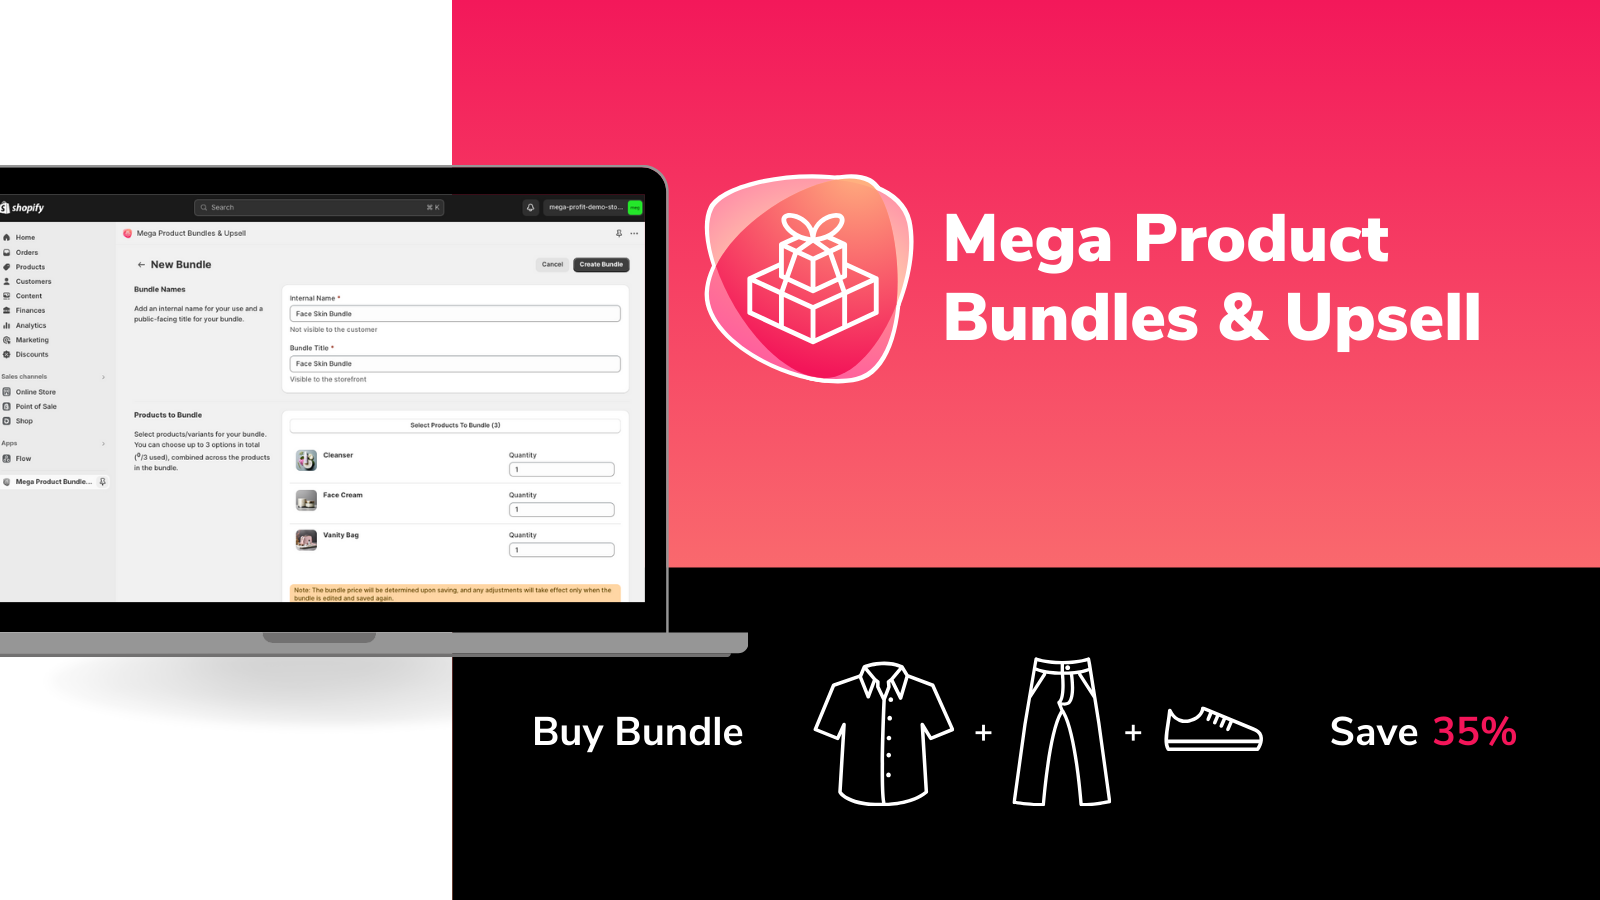 Mega Product Bundles & Upsell - simple setup